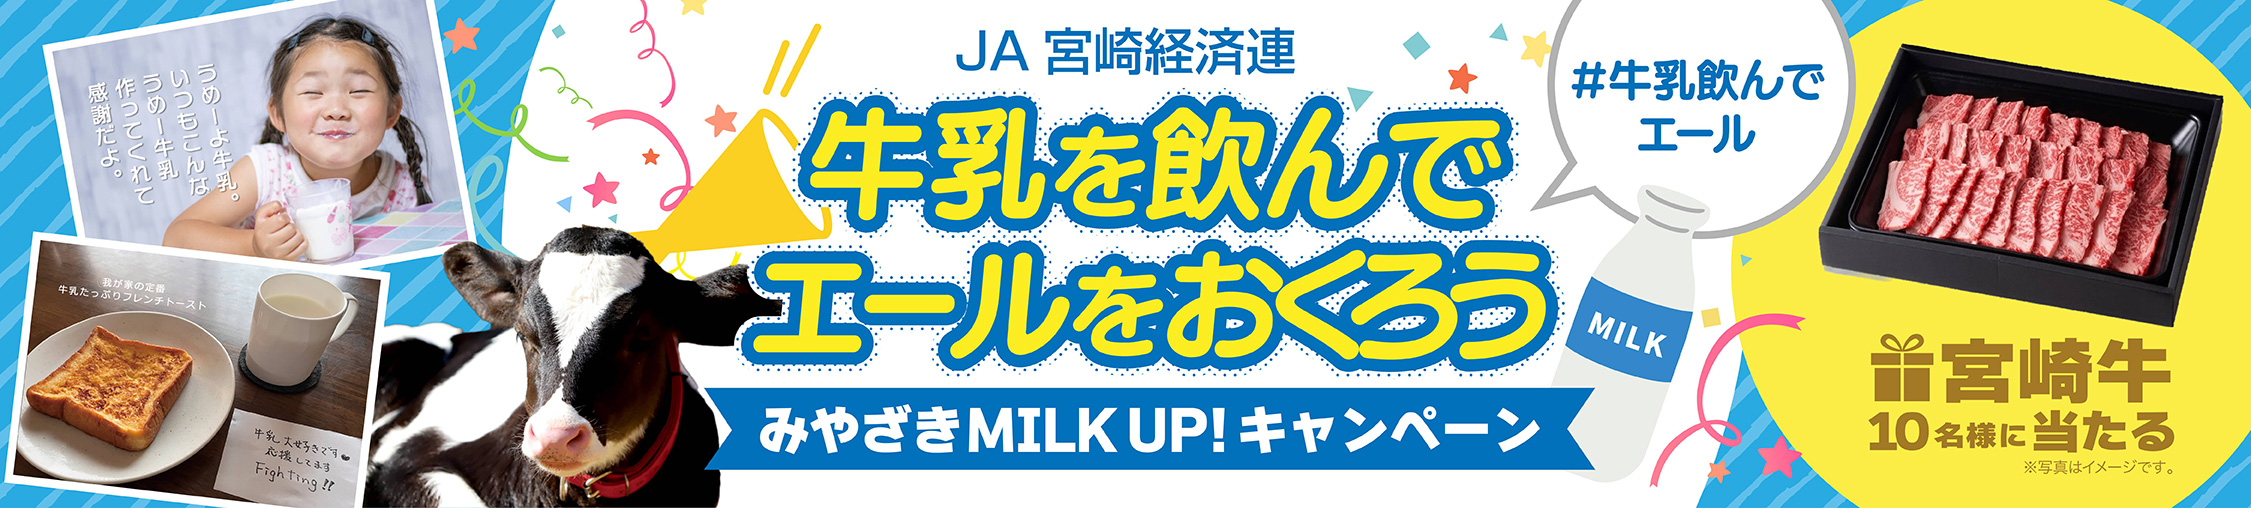 Milk Up!Instagram写真投稿キャンペーン